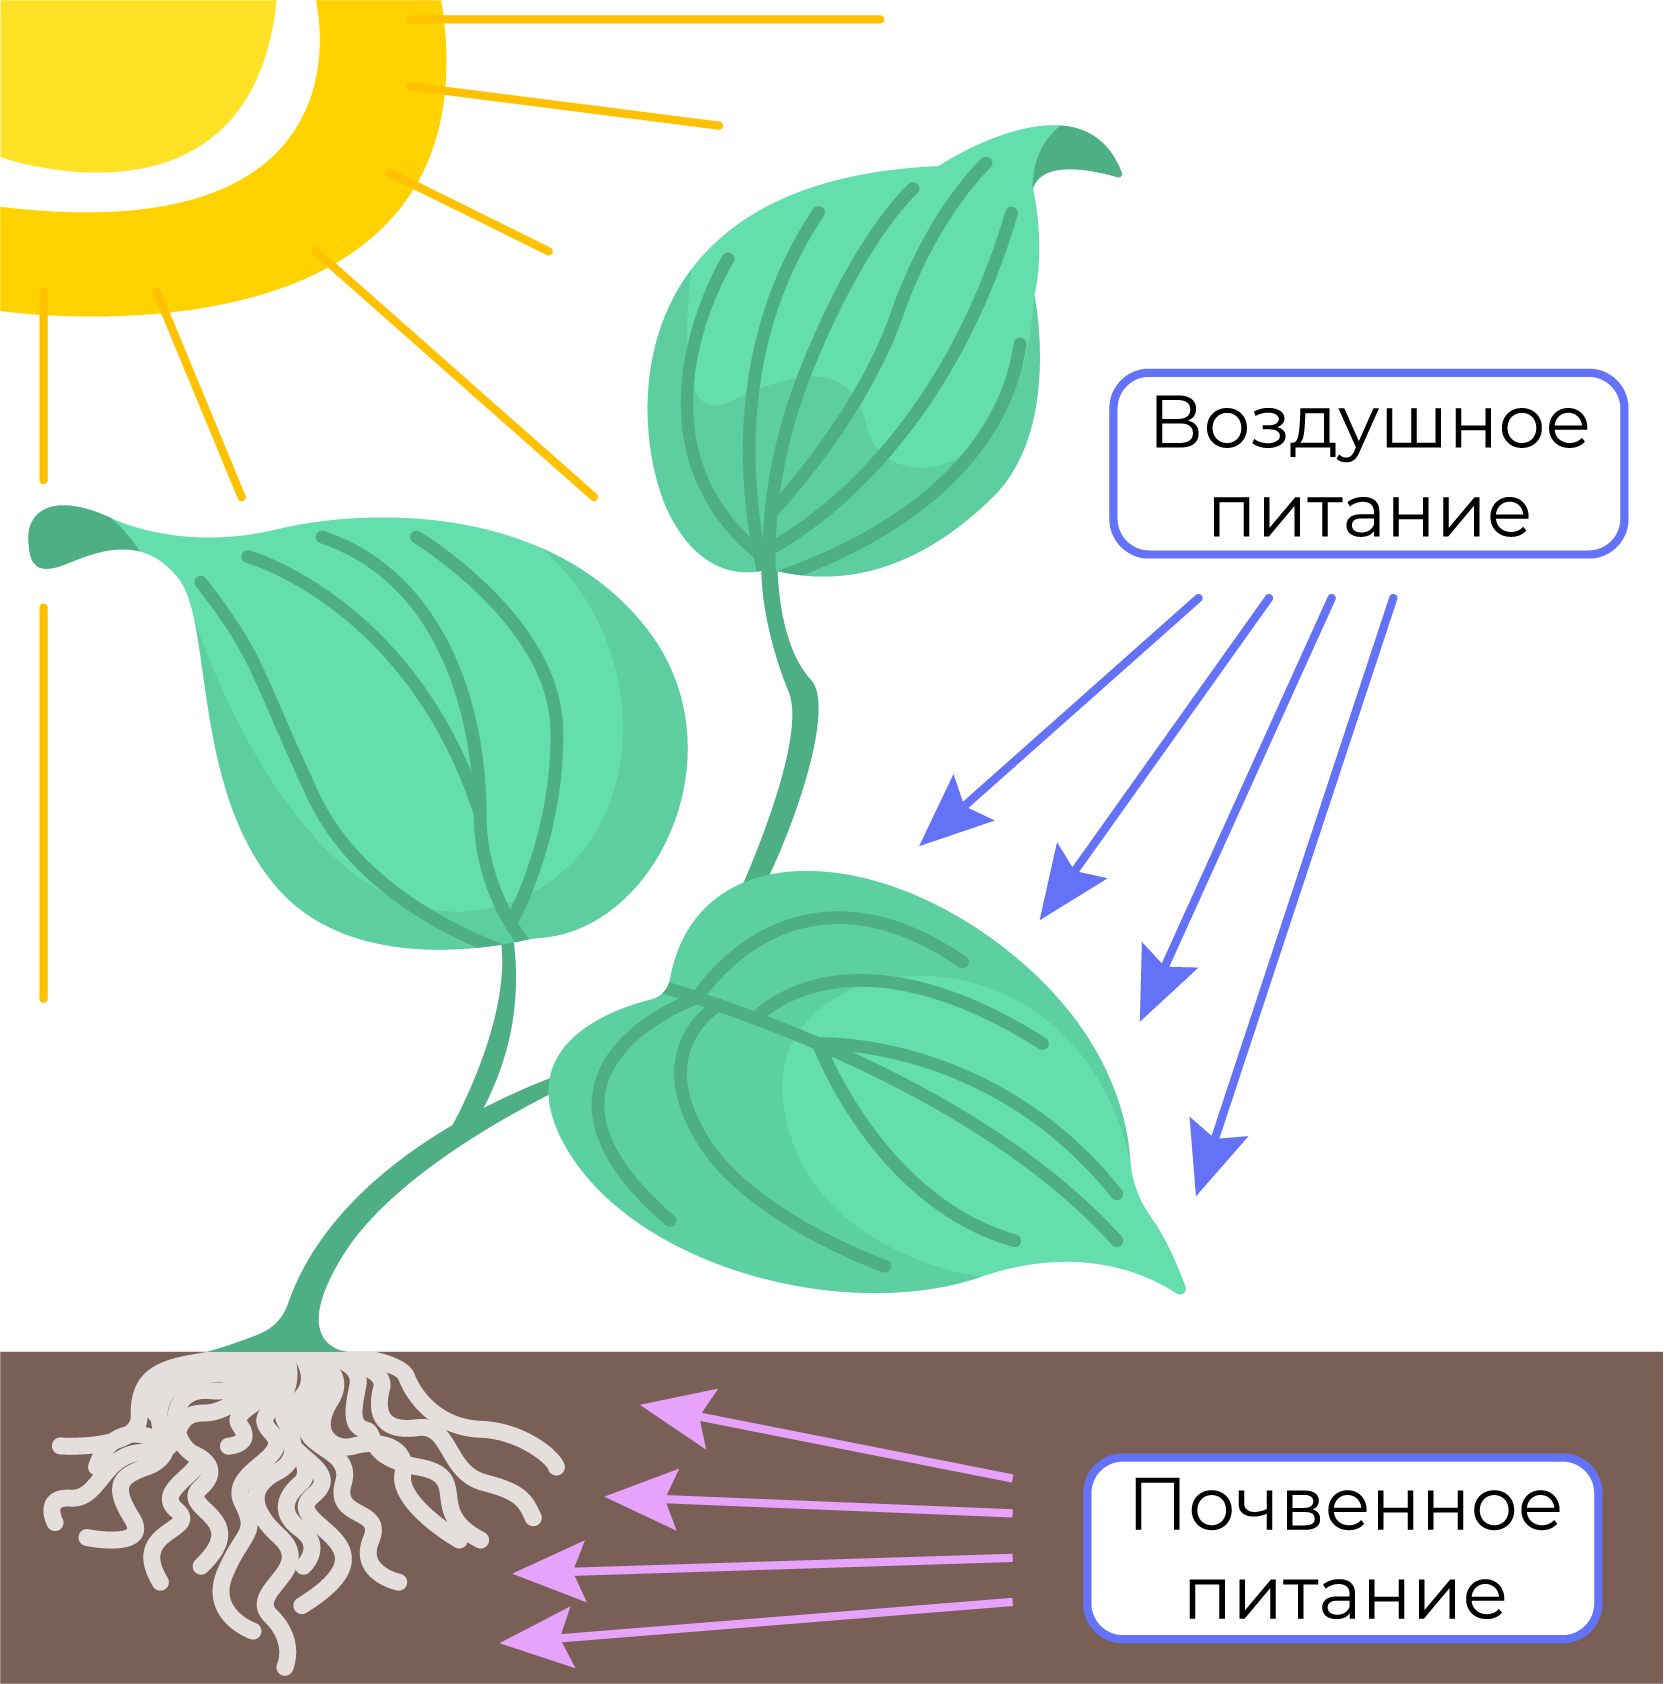 Воздушное питание тест 6 класс. Схема питания растений. Воздушное питание растений схема. Питание растений 3 класс. Питание растений картинка.